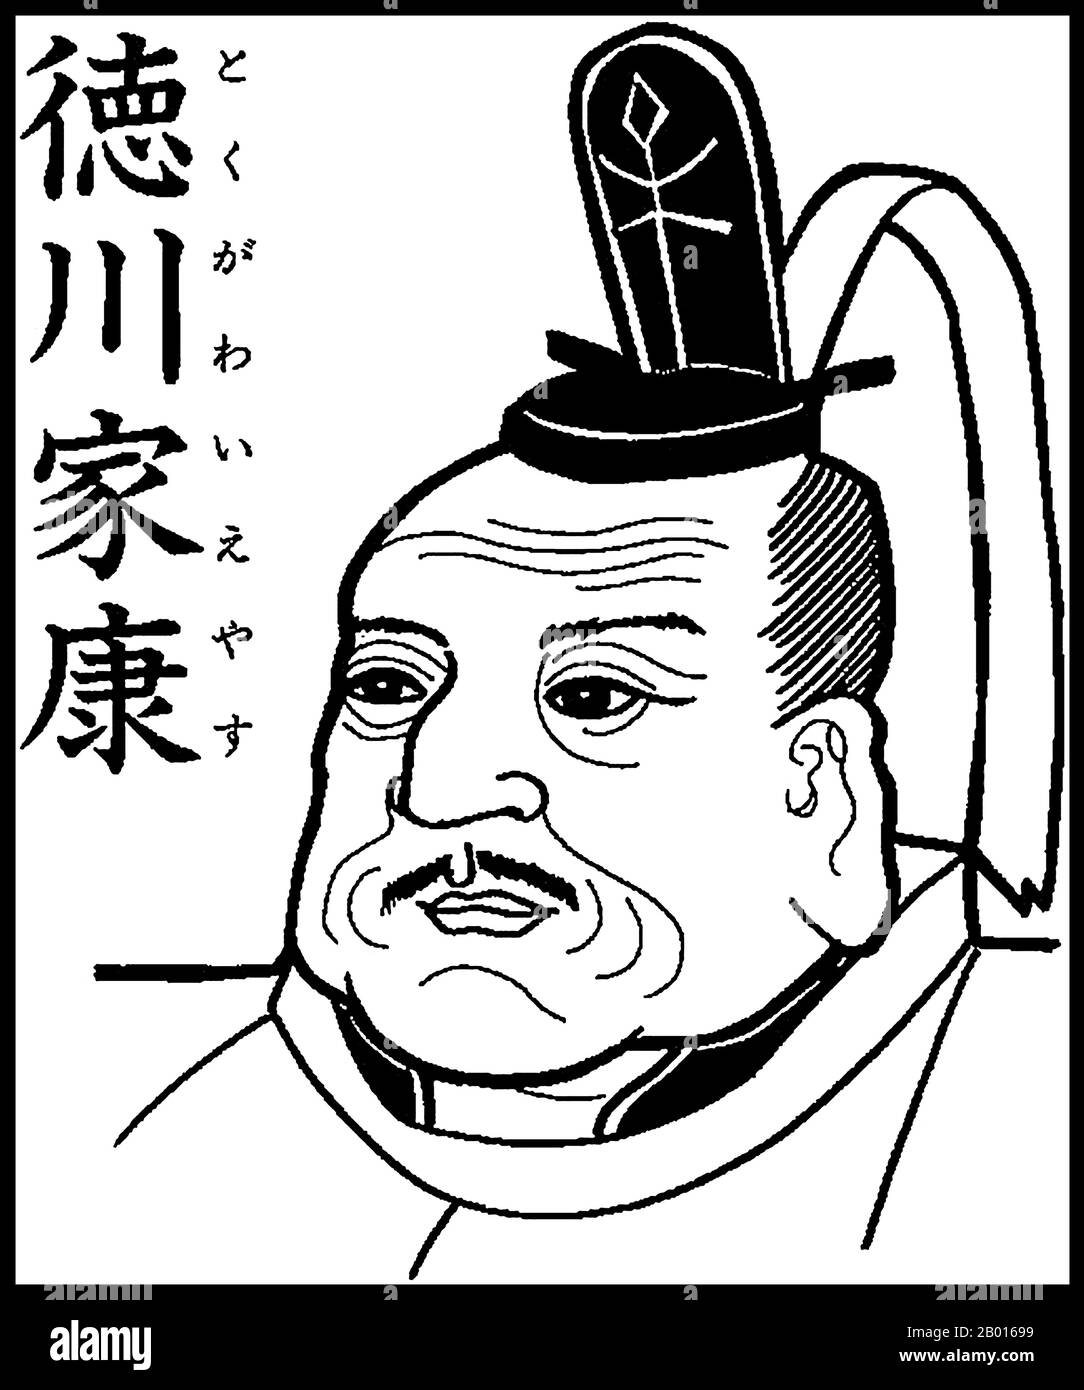 Japon : Tokugawa Ieyasu (31 janvier 1543 – 1er juin 1616), fondateur et premier dirigeant du shogunat Tokugawa (1600-1868).Illustration, c.xviiie siècle.Tokugawa Ieyasu, né Matsudaira Takechiyo, fut le fondateur et le premier shogun du shogunat Tokugawa du Japon, qui régna de la bataille de Sekigahara en 1600 jusqu'à la restauration de Meiji en 1868.Ieyasu a pris le pouvoir en 1600, a reçu une nomination comme shogun en 1603, a renoncé à ses fonctions en 1605, mais est resté au pouvoir jusqu'à sa mort en 1616.Ieyasu a été enchâssé à titre posthume à Nikkō Tōshō-gū. Banque D'Images